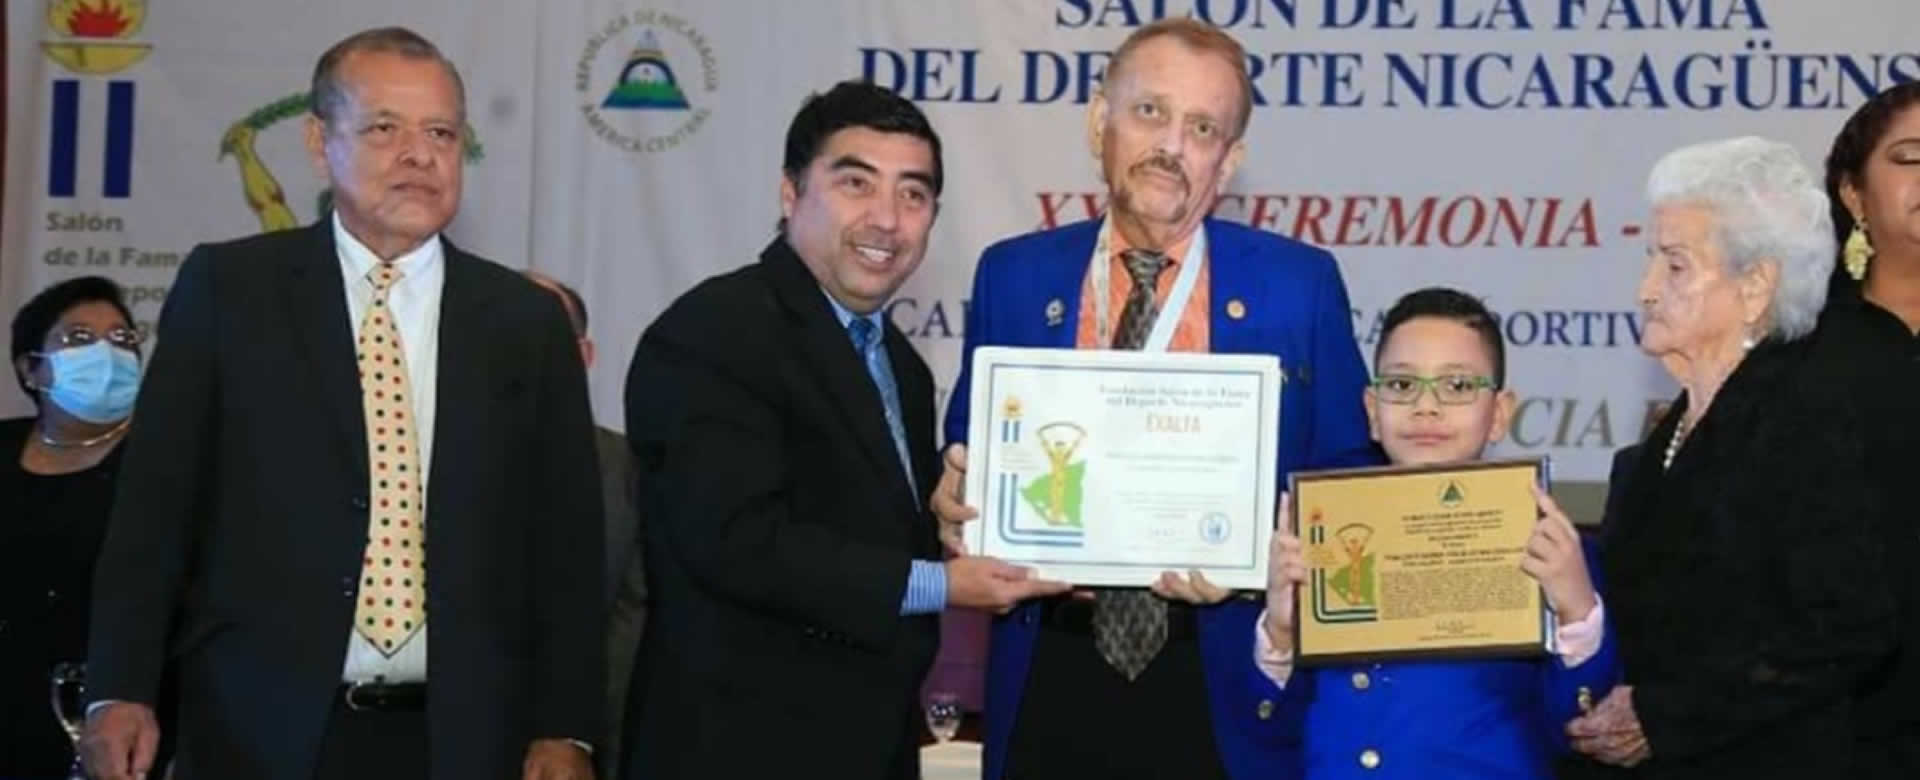 Muere Xavier Araquistaín, destacado cronista deportivo en Nicaragua